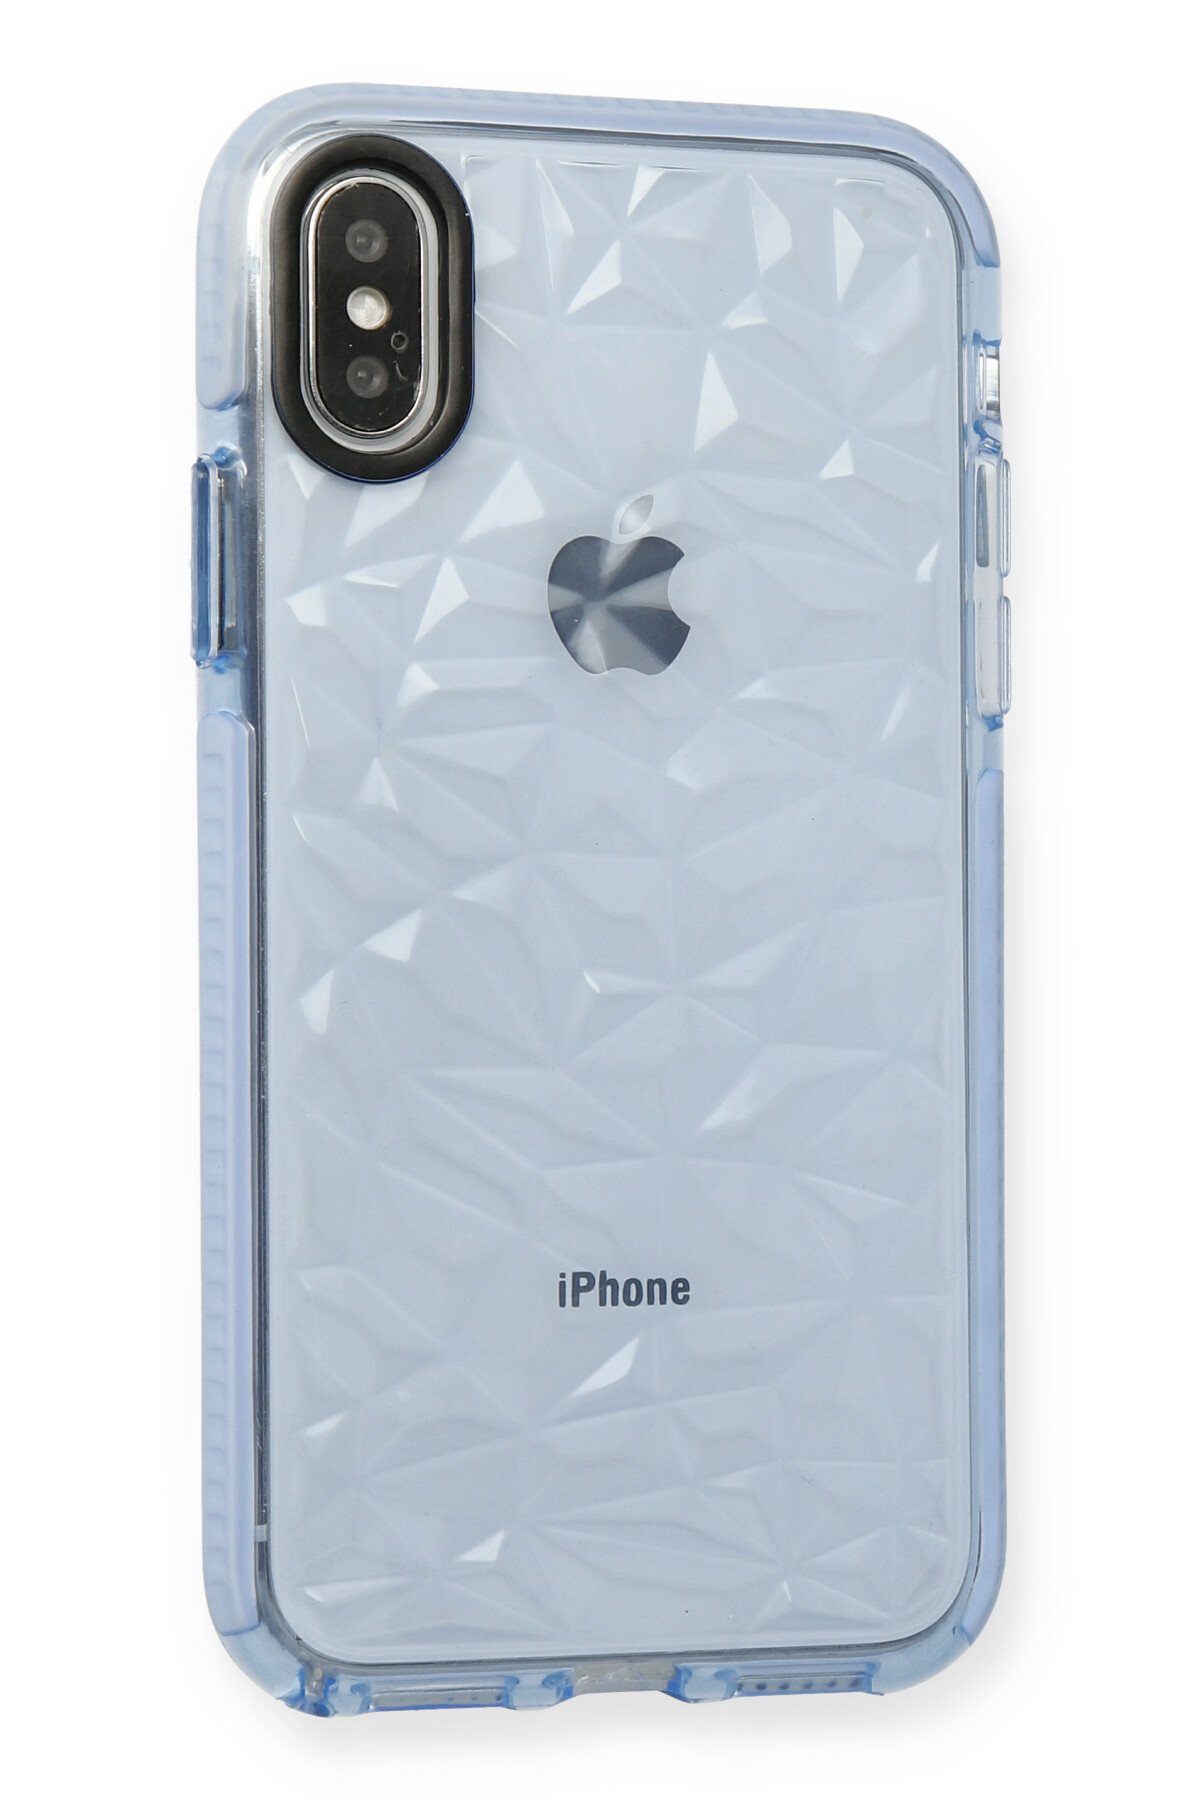 Newface iPhone X Kılıf Lansman Legant Silikon - Yeşil